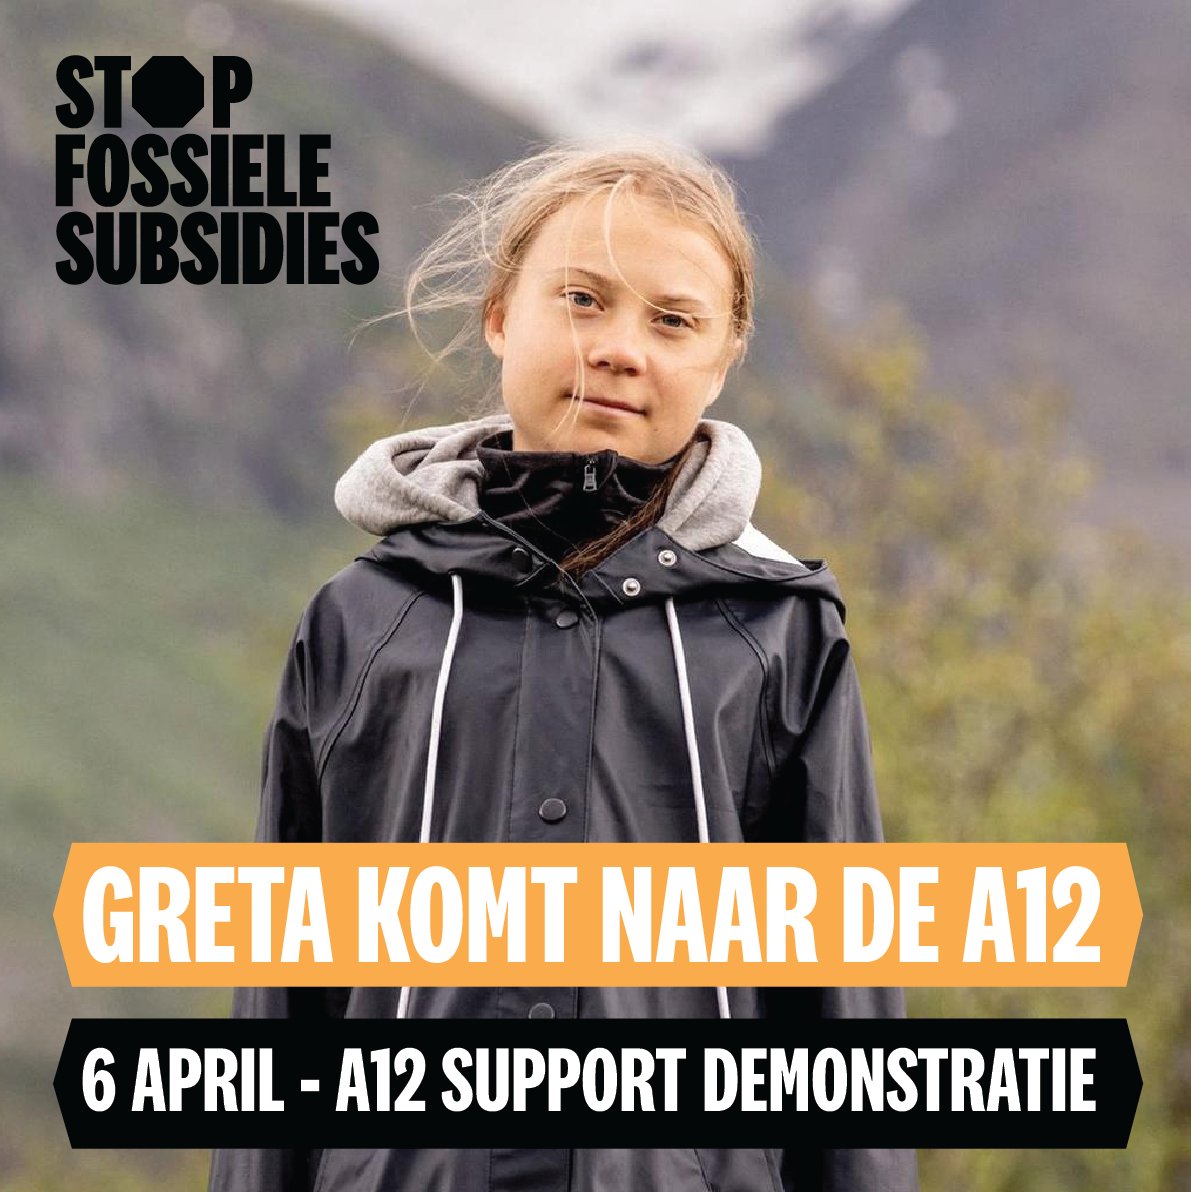 Vandaag om 12:00 uur lopen we samen met duizenden andere bezorgde maar strijdvaardige mensen vanuit verschillende plekken in #DenHaag in marsen naar de #A12 en herhalen onze eis: #StopFossieleSubsidies

#A12Blokkadewww.a12blokkade.nl
#A12SupportDemowww.a12support.nl